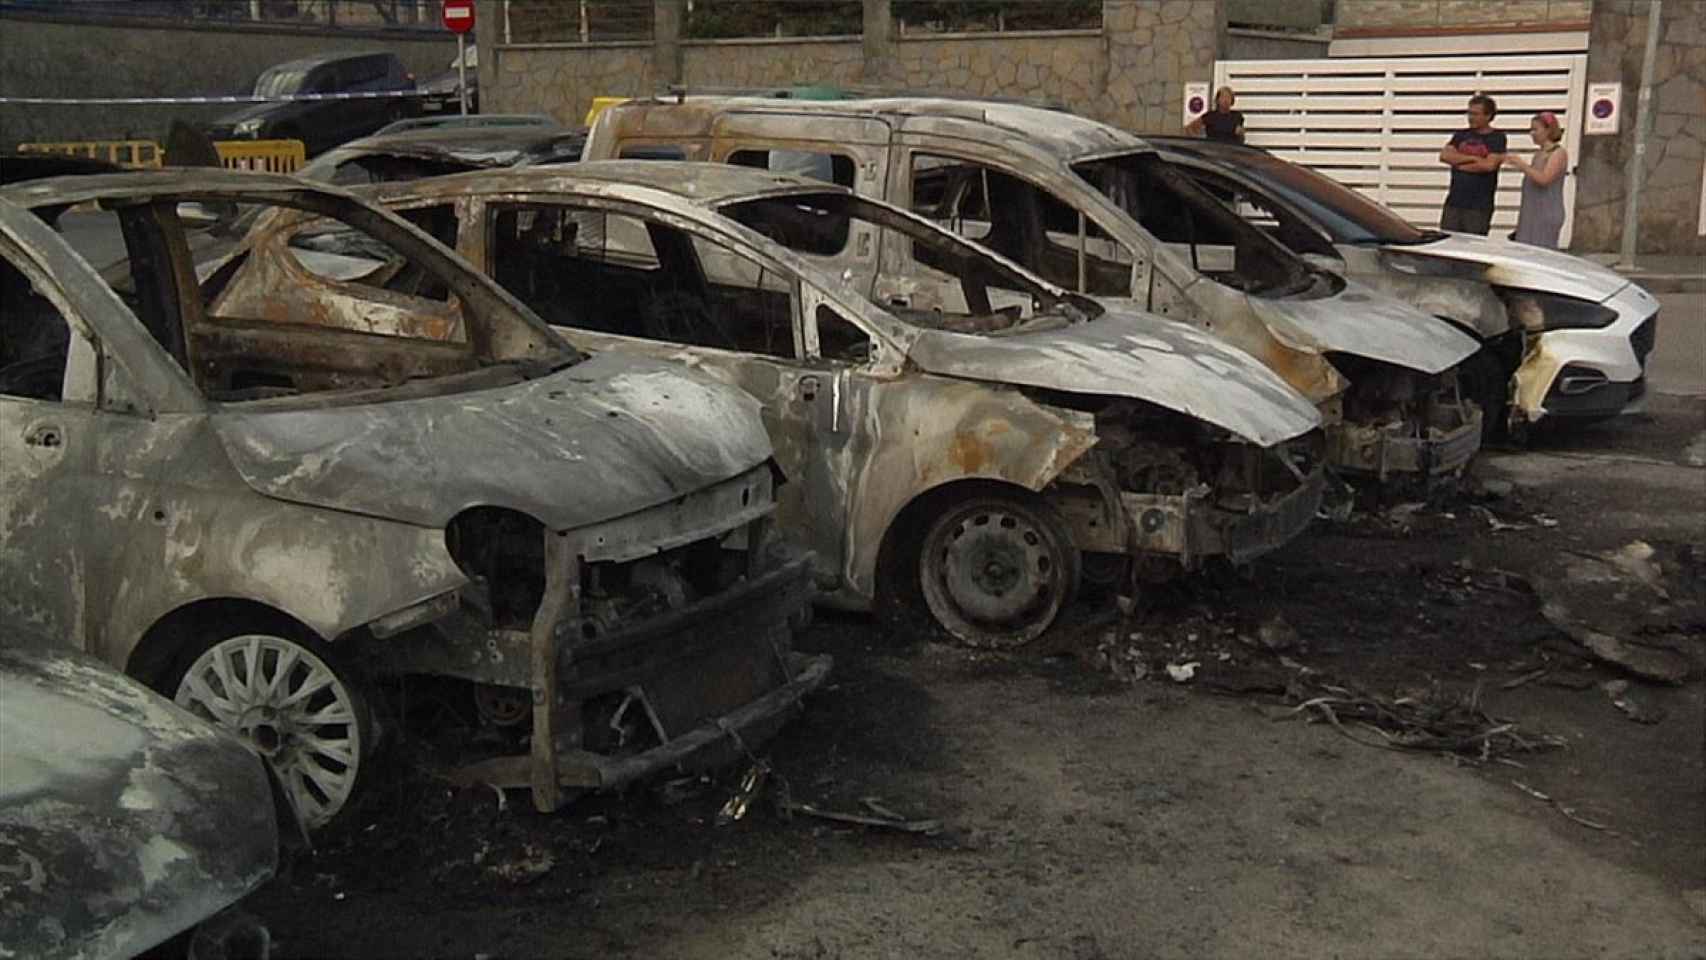 Imagen de los coches quemados en Mundaka el pasado verano. / EITB